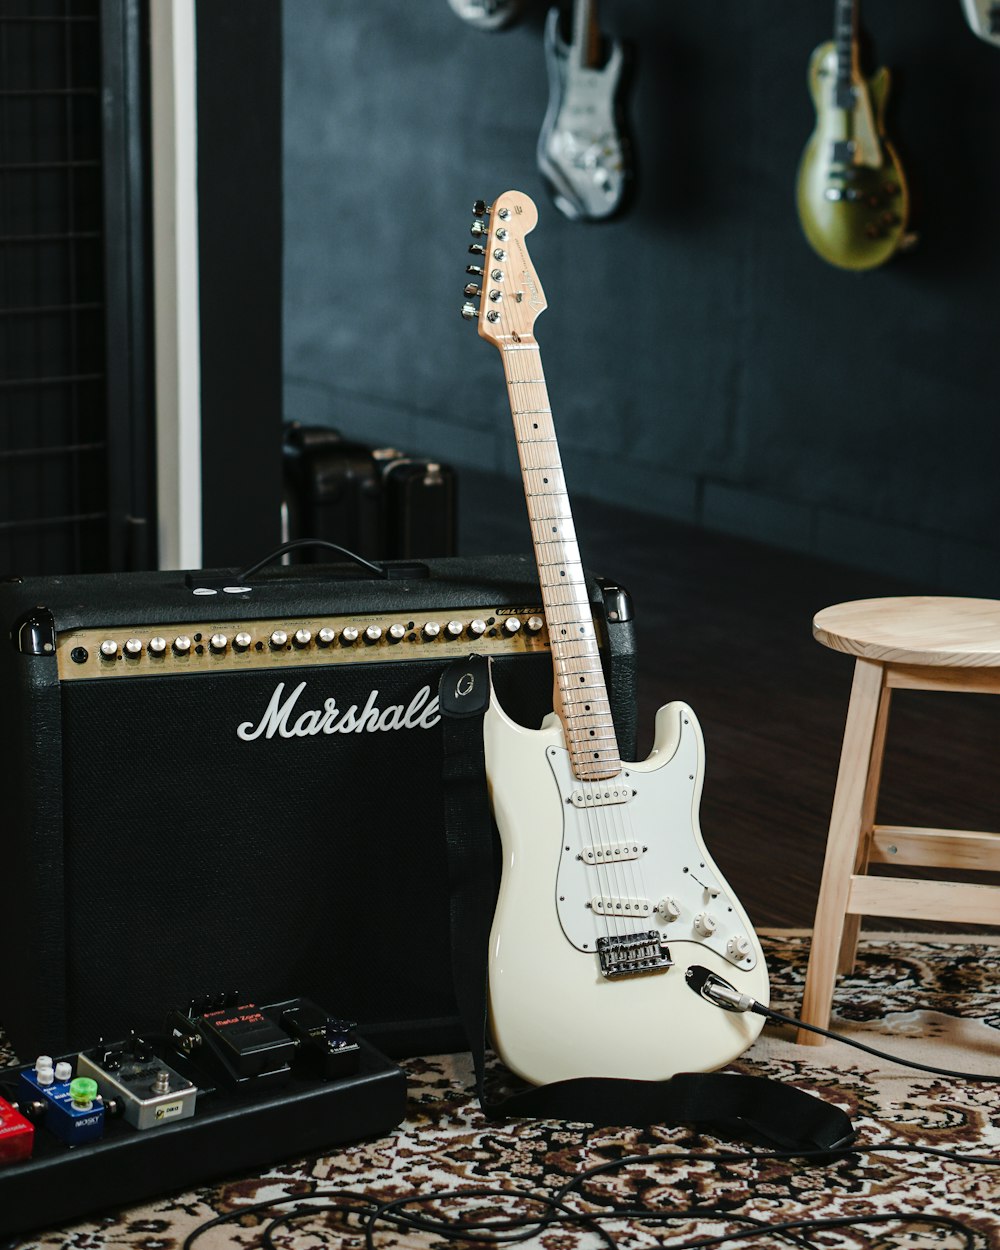 Imágenes de Fender Guitar | Descarga imágenes gratuitas en Unsplash